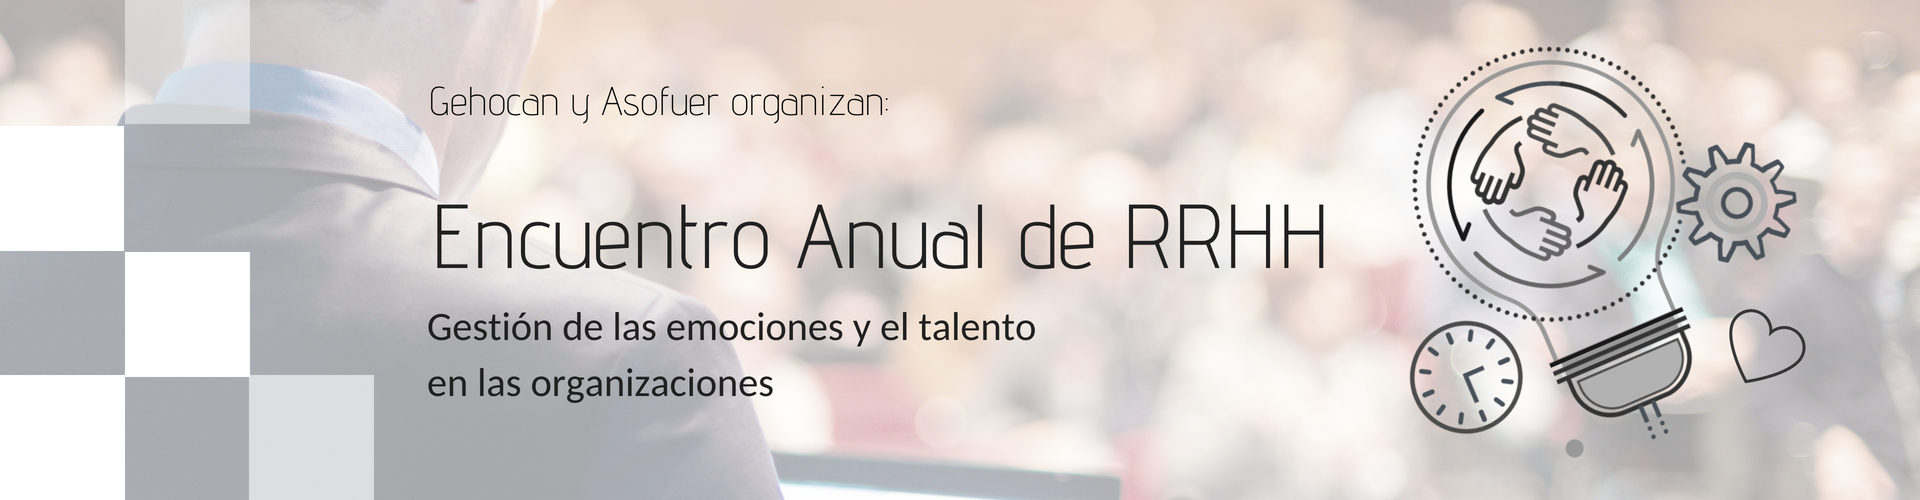 Conferencia gestion del talento Roberto Luna (rrhh y dirección de personas)